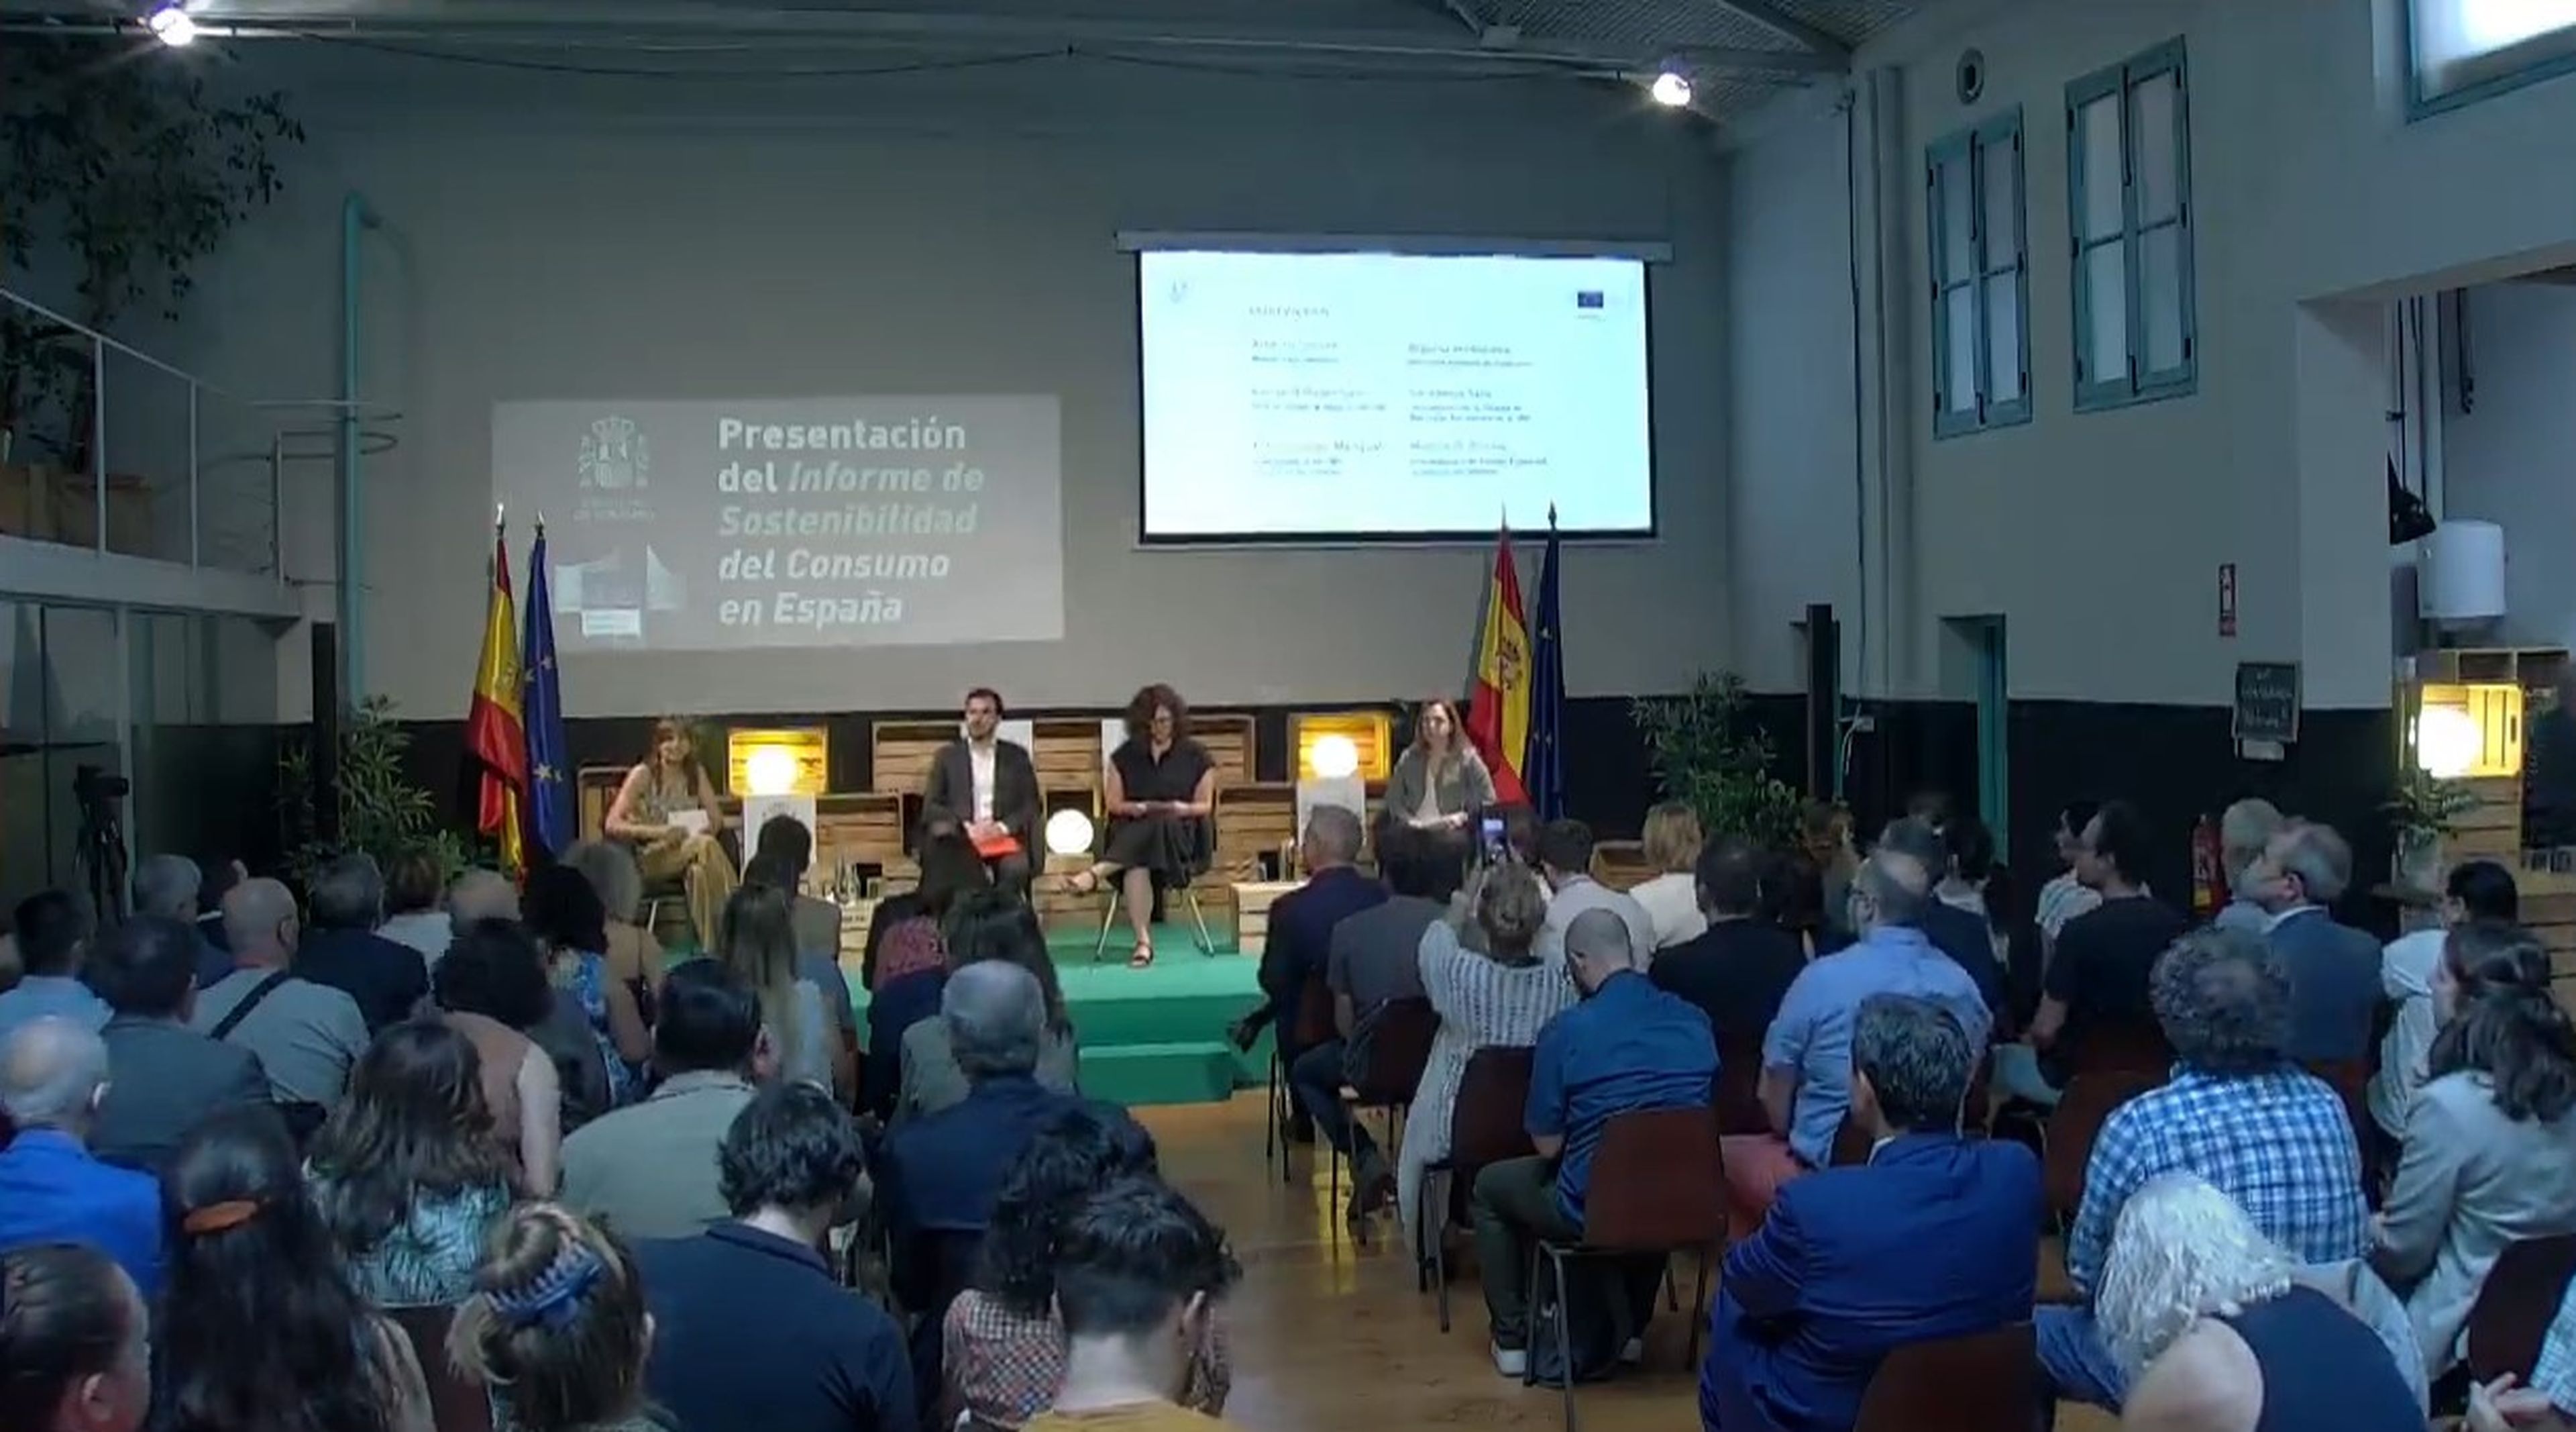 Presentación del informe sobre la sostenibilidad del consumo en España.